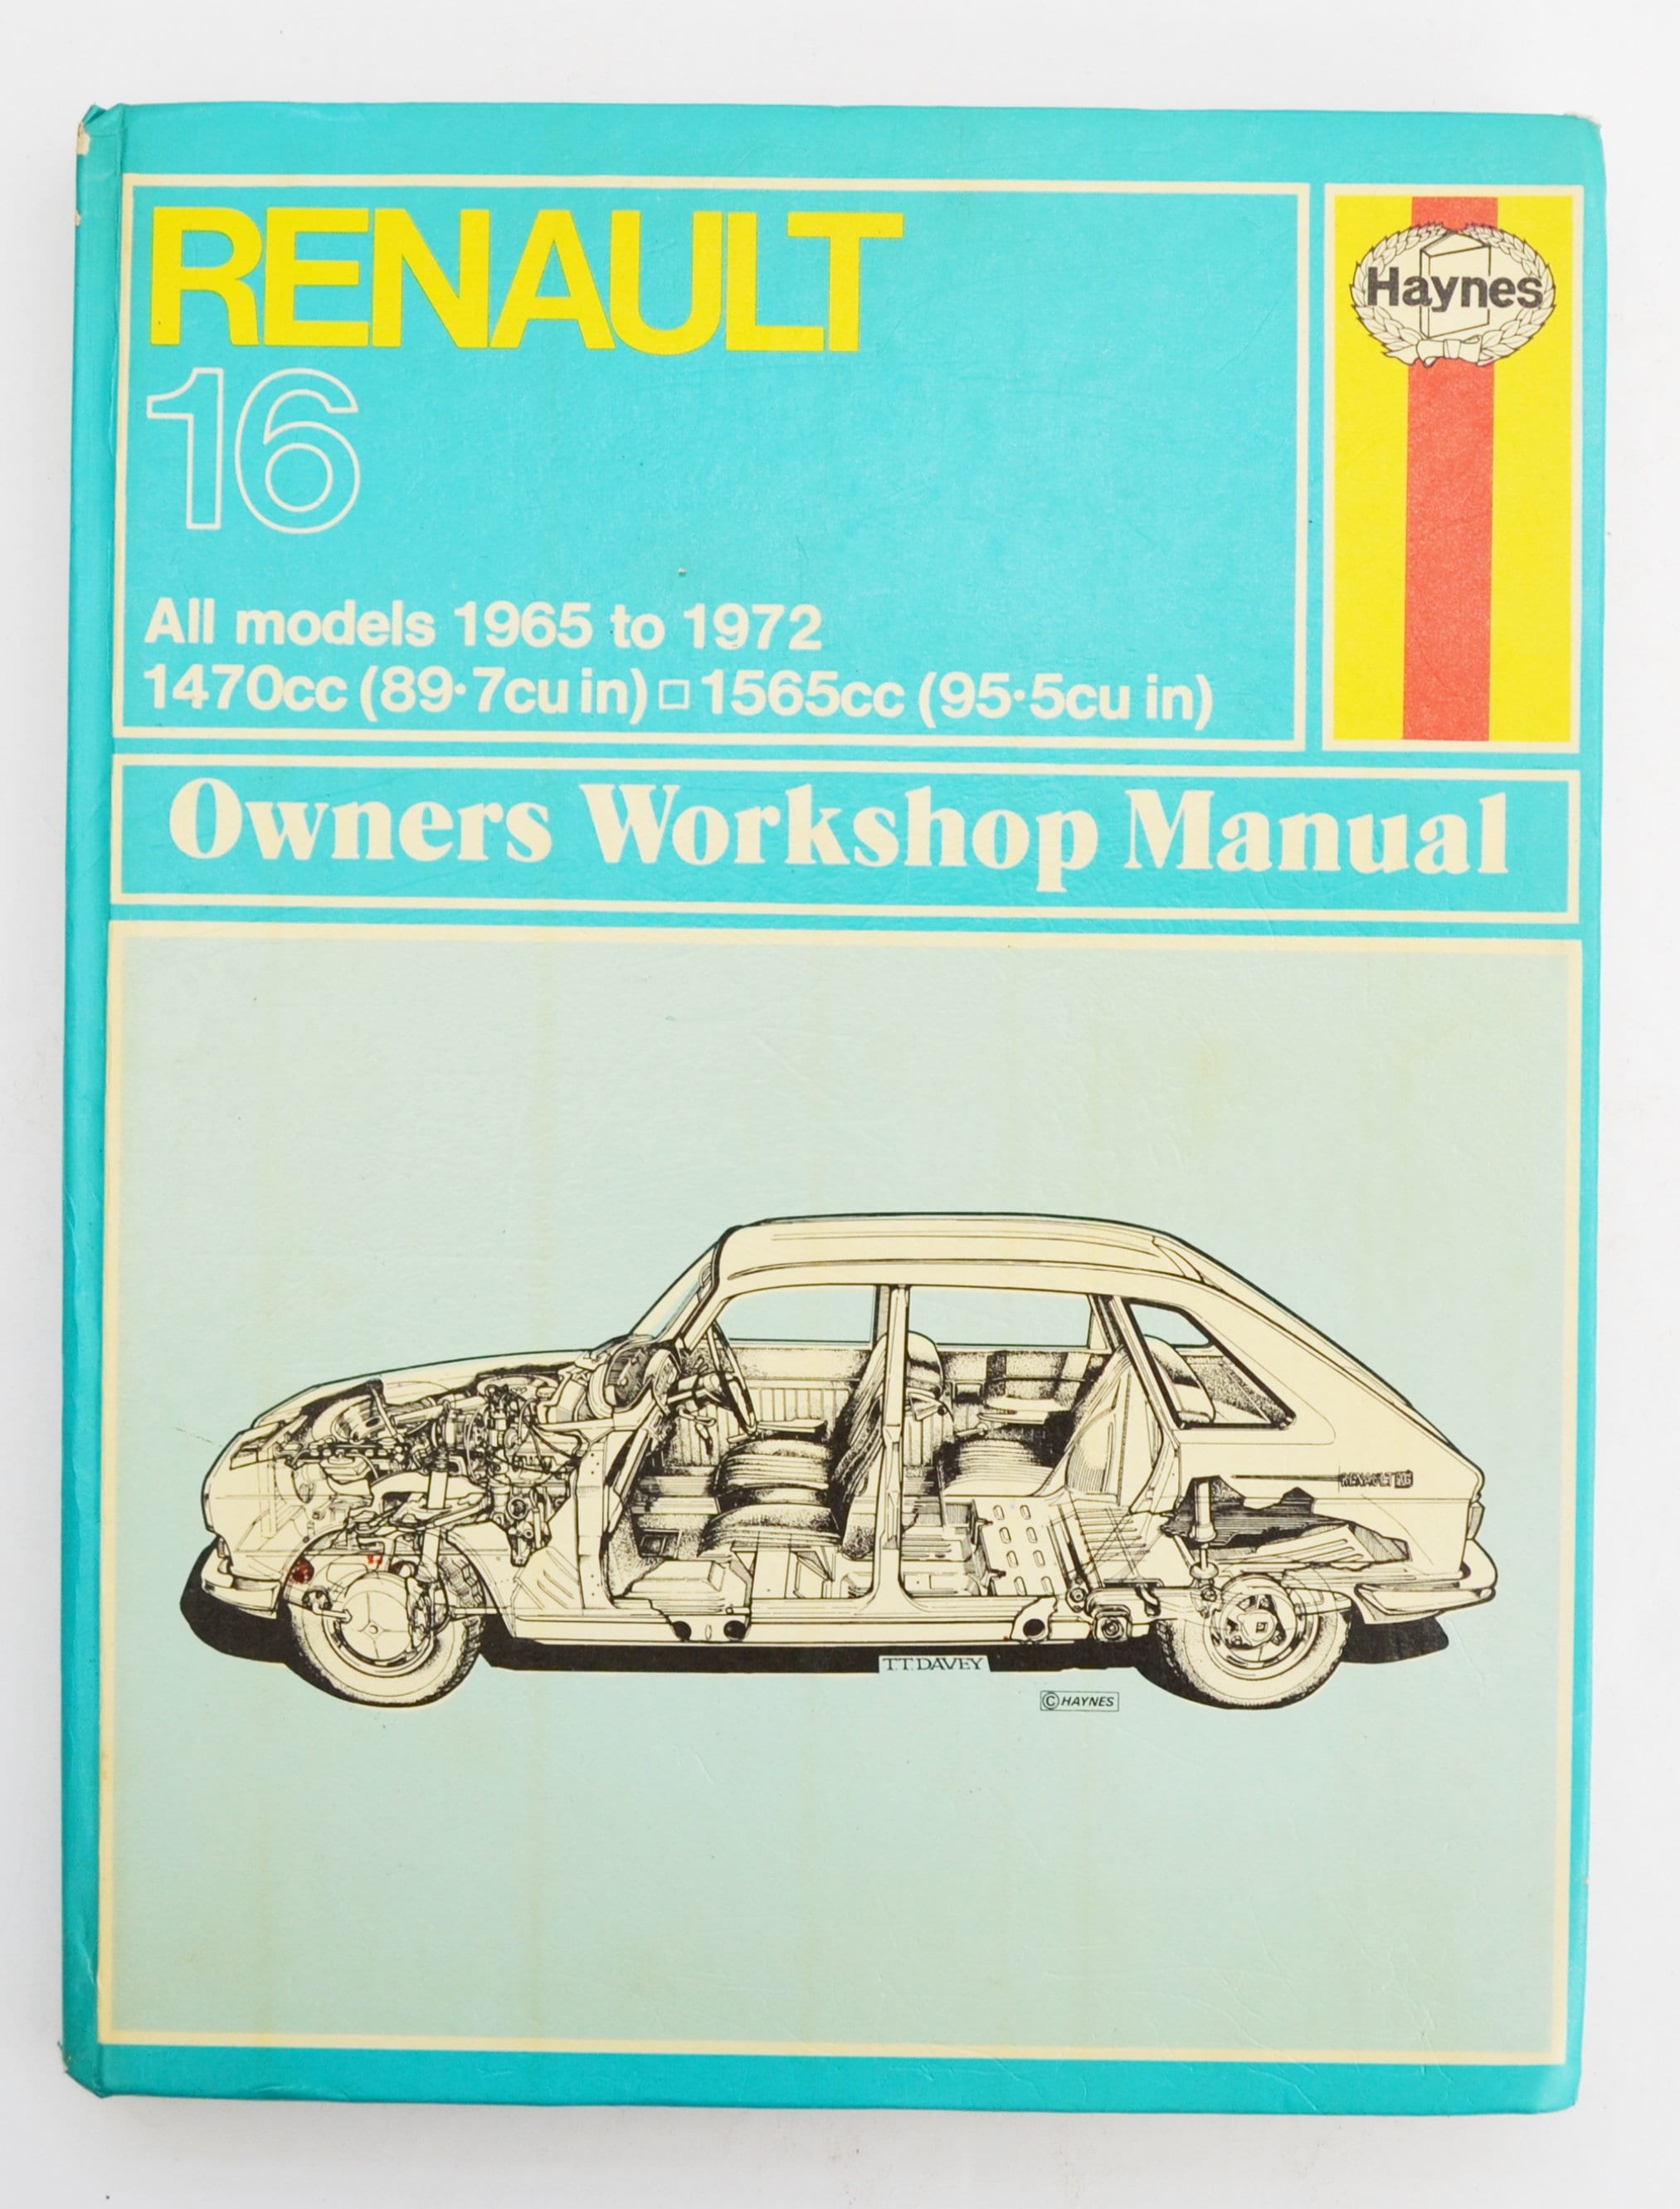 Haynes Renault Owners Workshop Manual Renault 16 Owners | Etsy